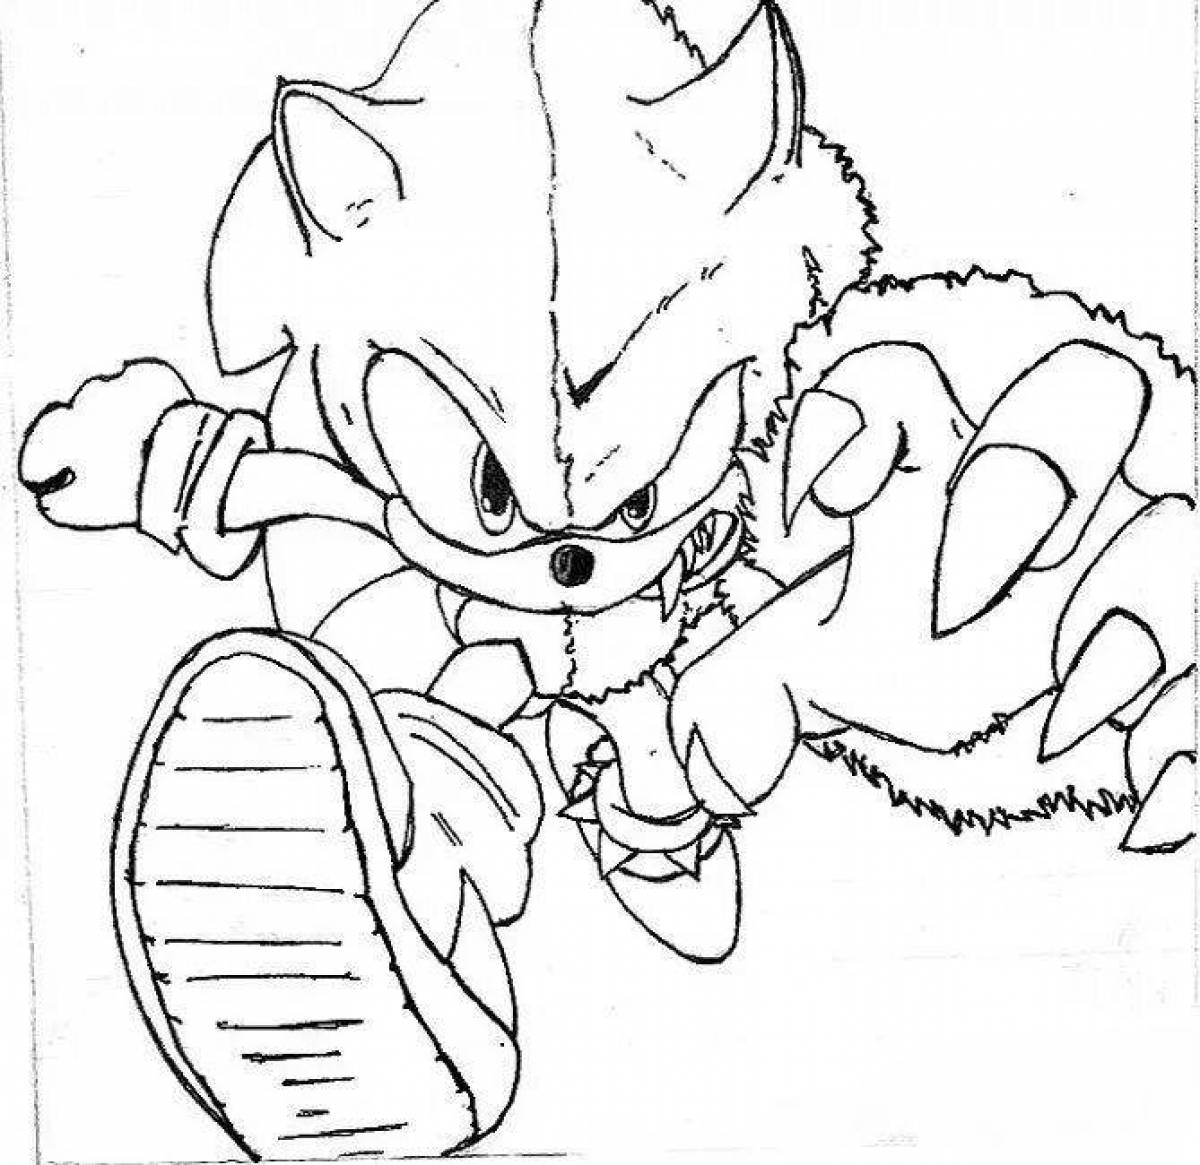 Sonic fun coloring book